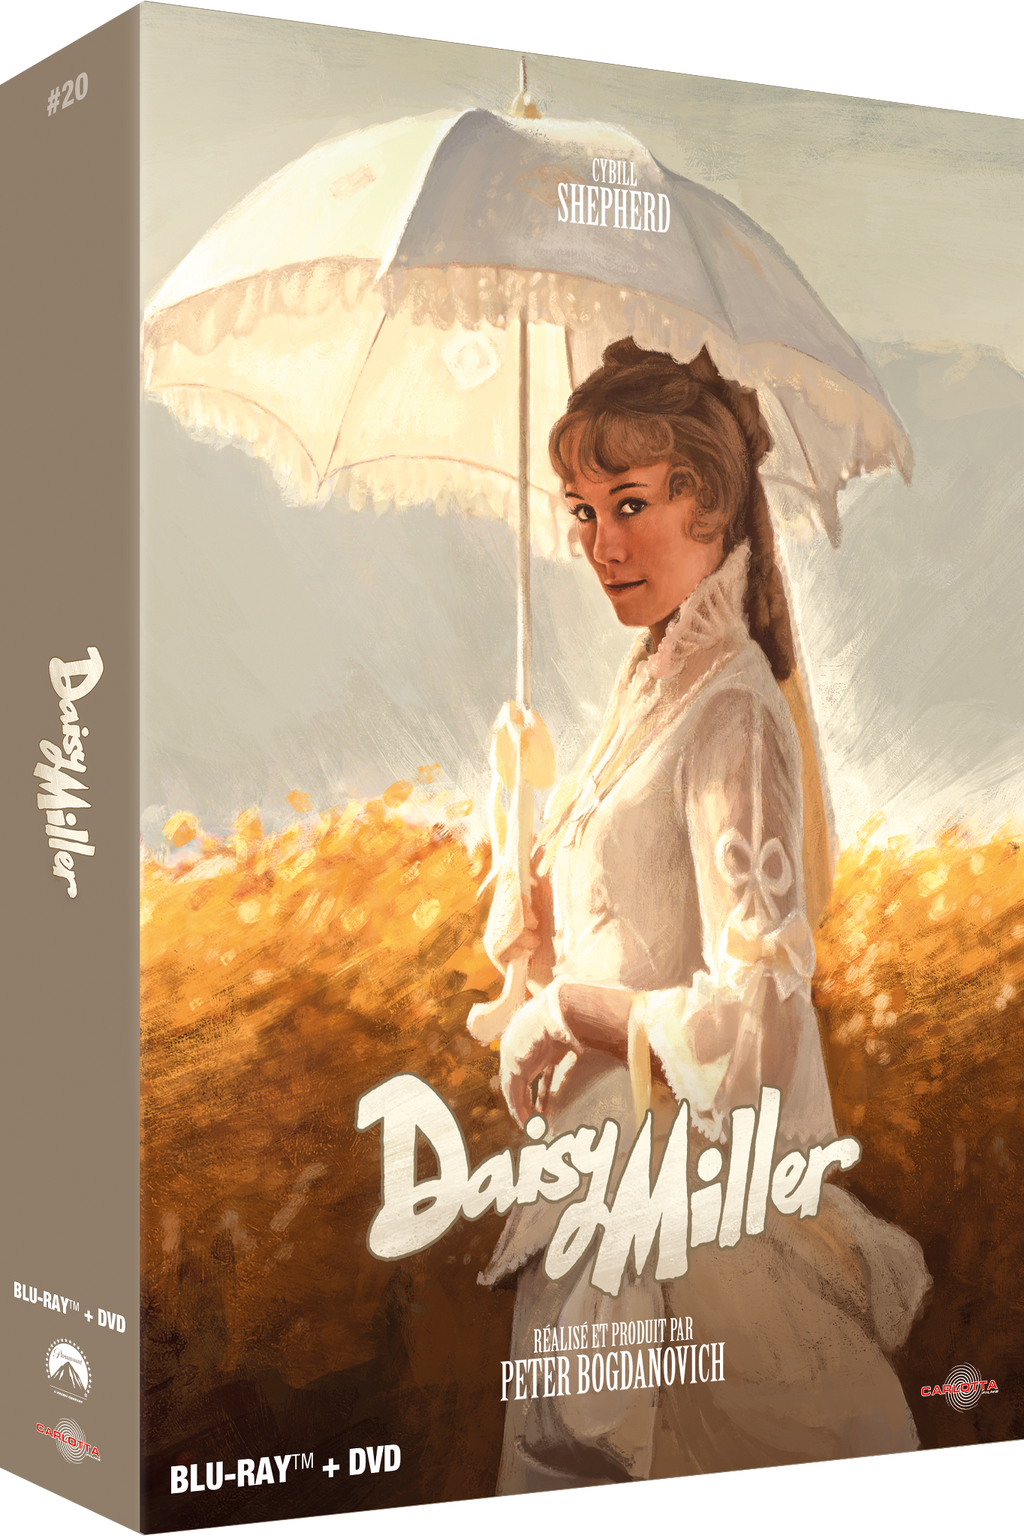 Daisy Miller - Prestige Limited Edition Combo Blu-ray + DVD + Memorabilia